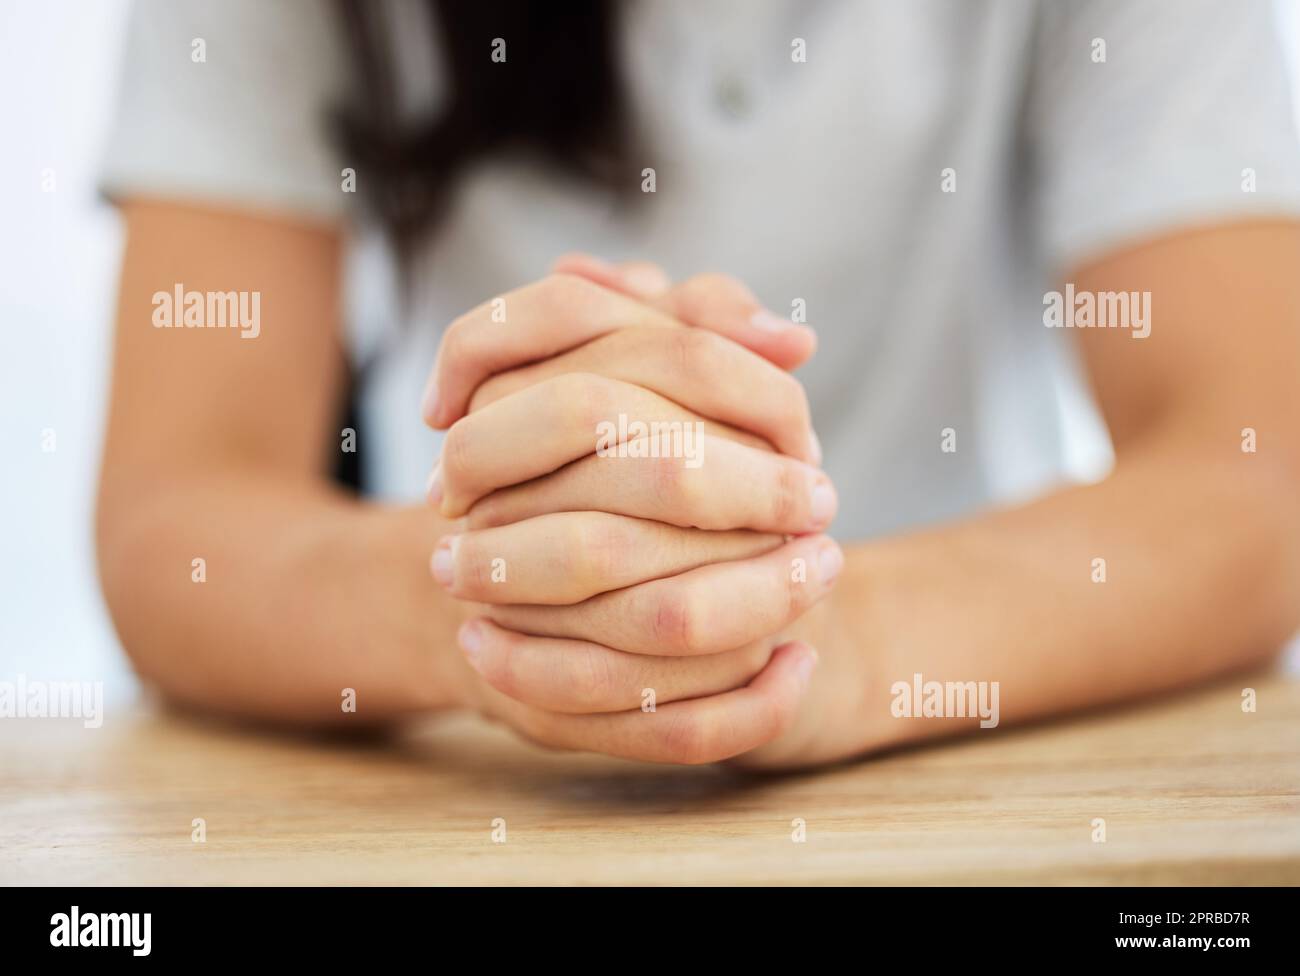 Immer den Glauben bewahren. Eine anonyme Frau, die an einem Tisch sitzt und ihre Hände zusammengeklemmt hat. Stockfoto